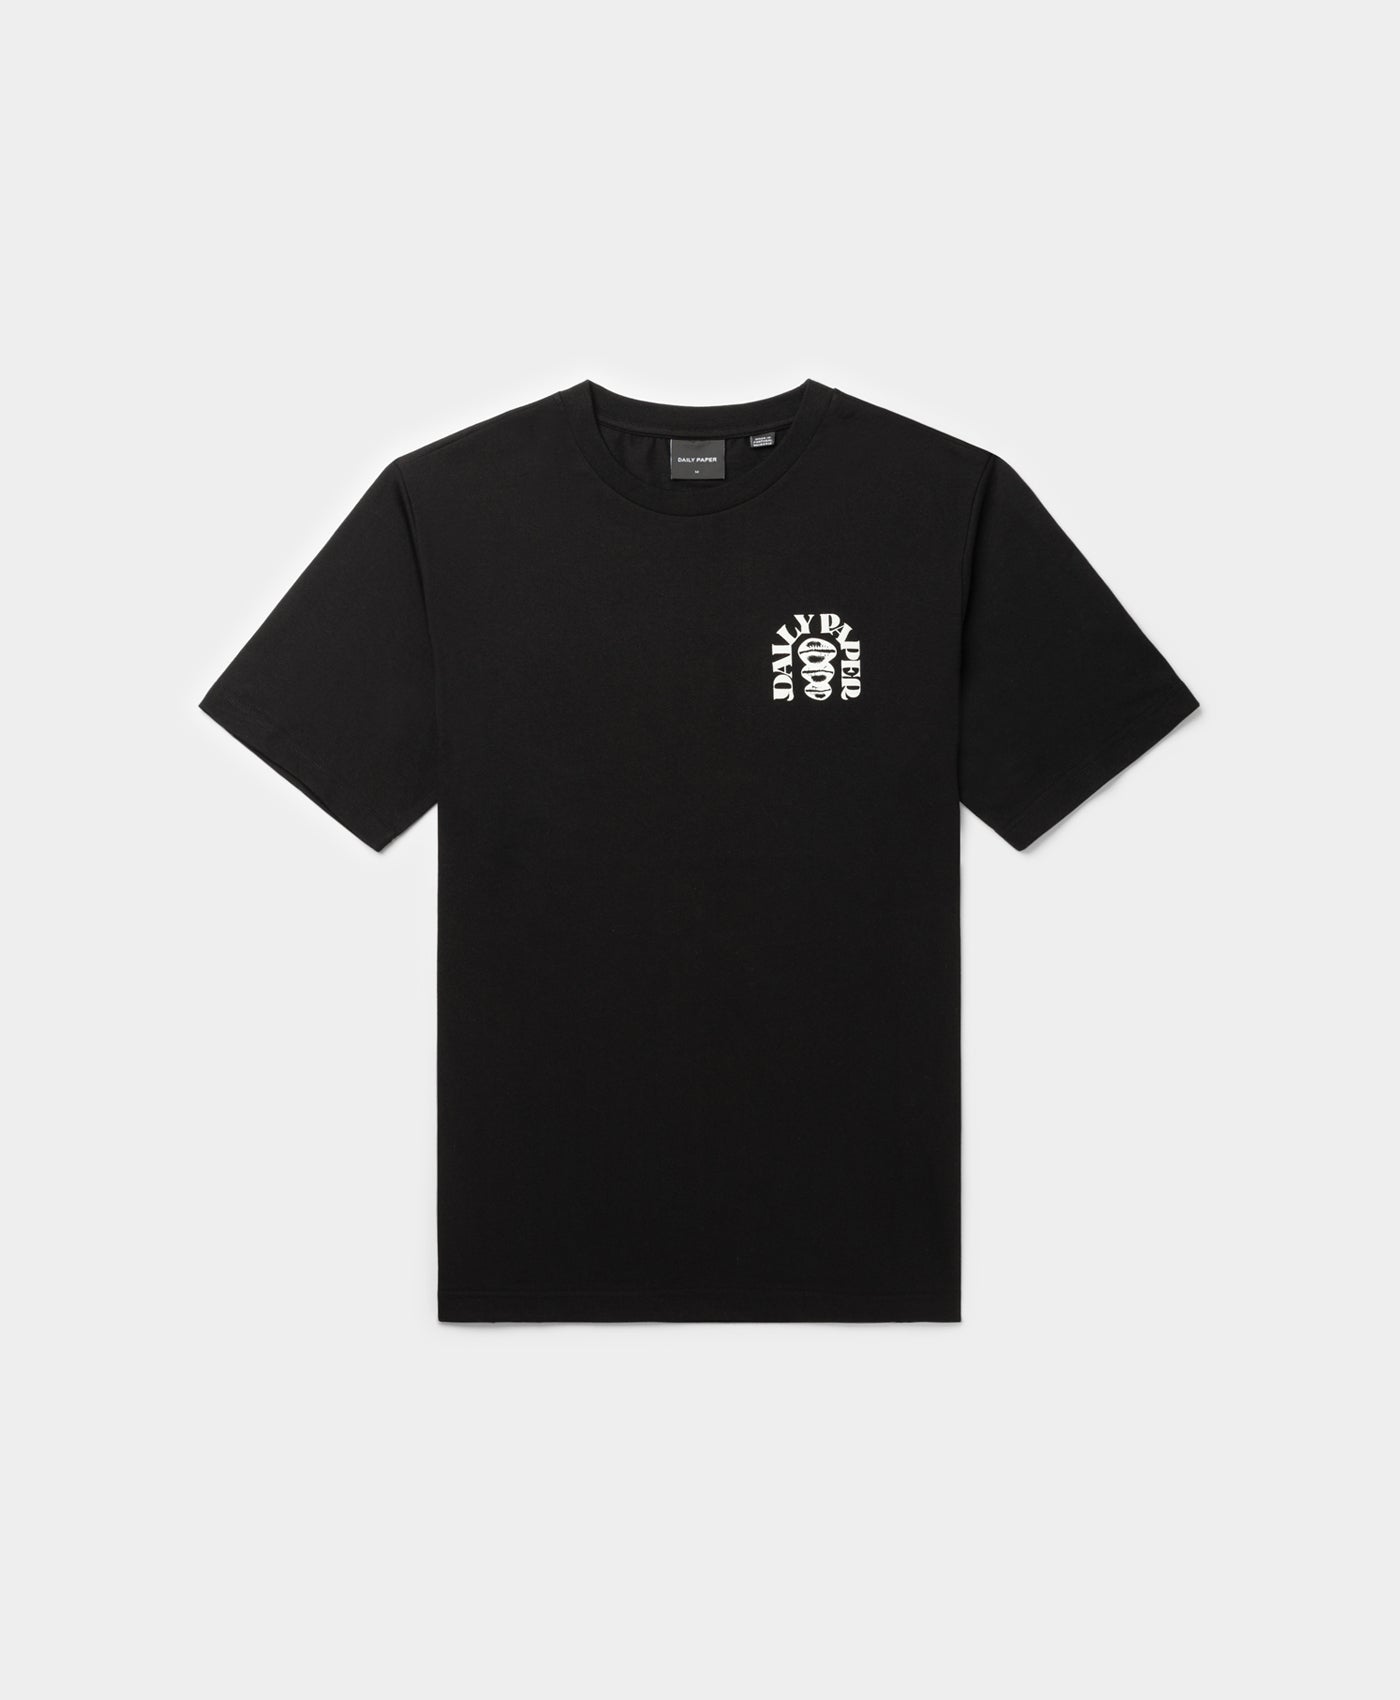 DP - Black Rafat T-Shirt - Packshot - Front